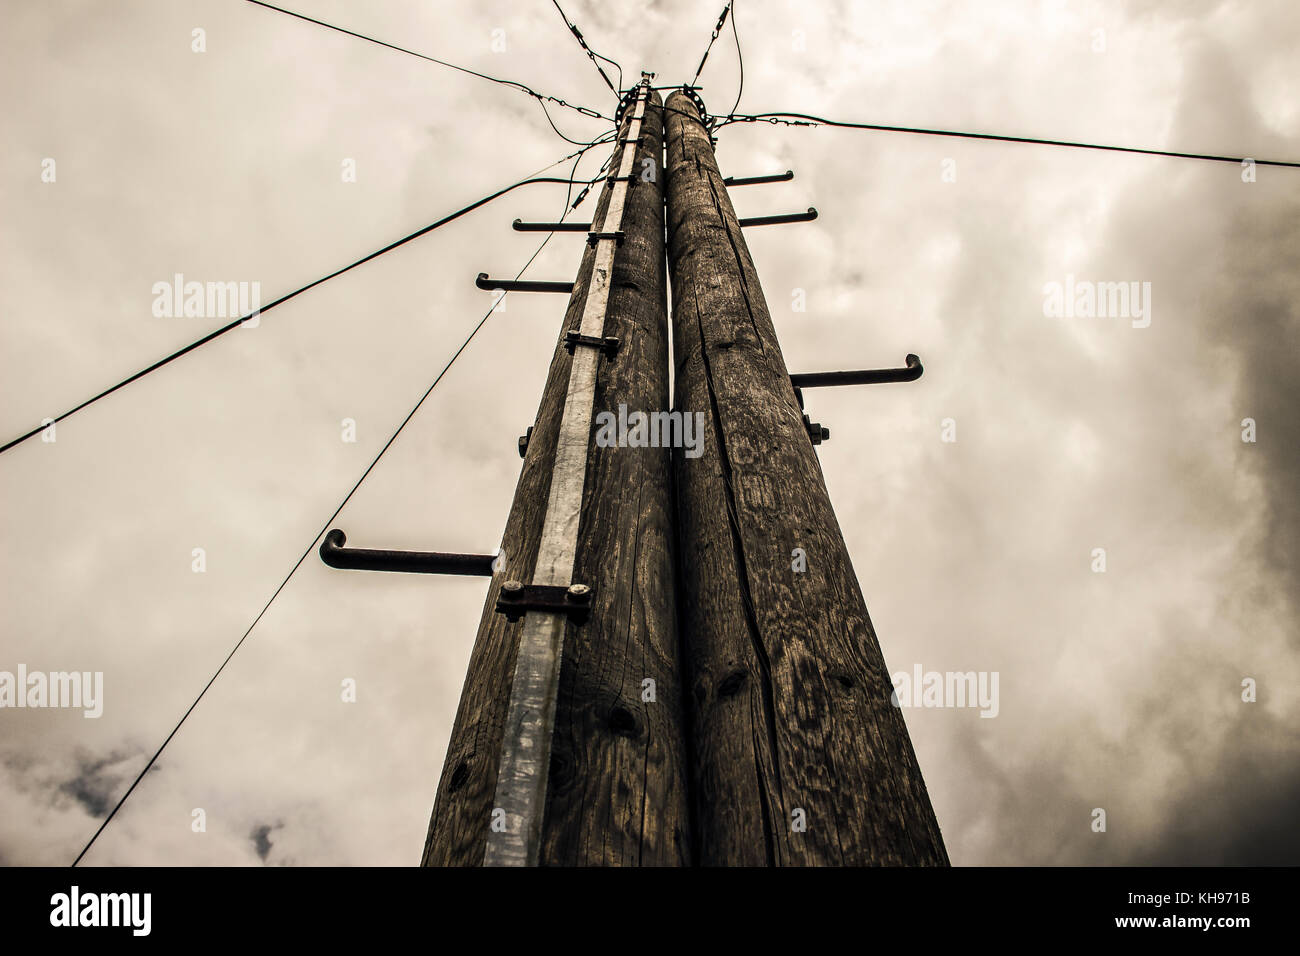 Serbien - elektrische Pole mit Blitzableiter gegen die stürmischen Himmel Stockfoto